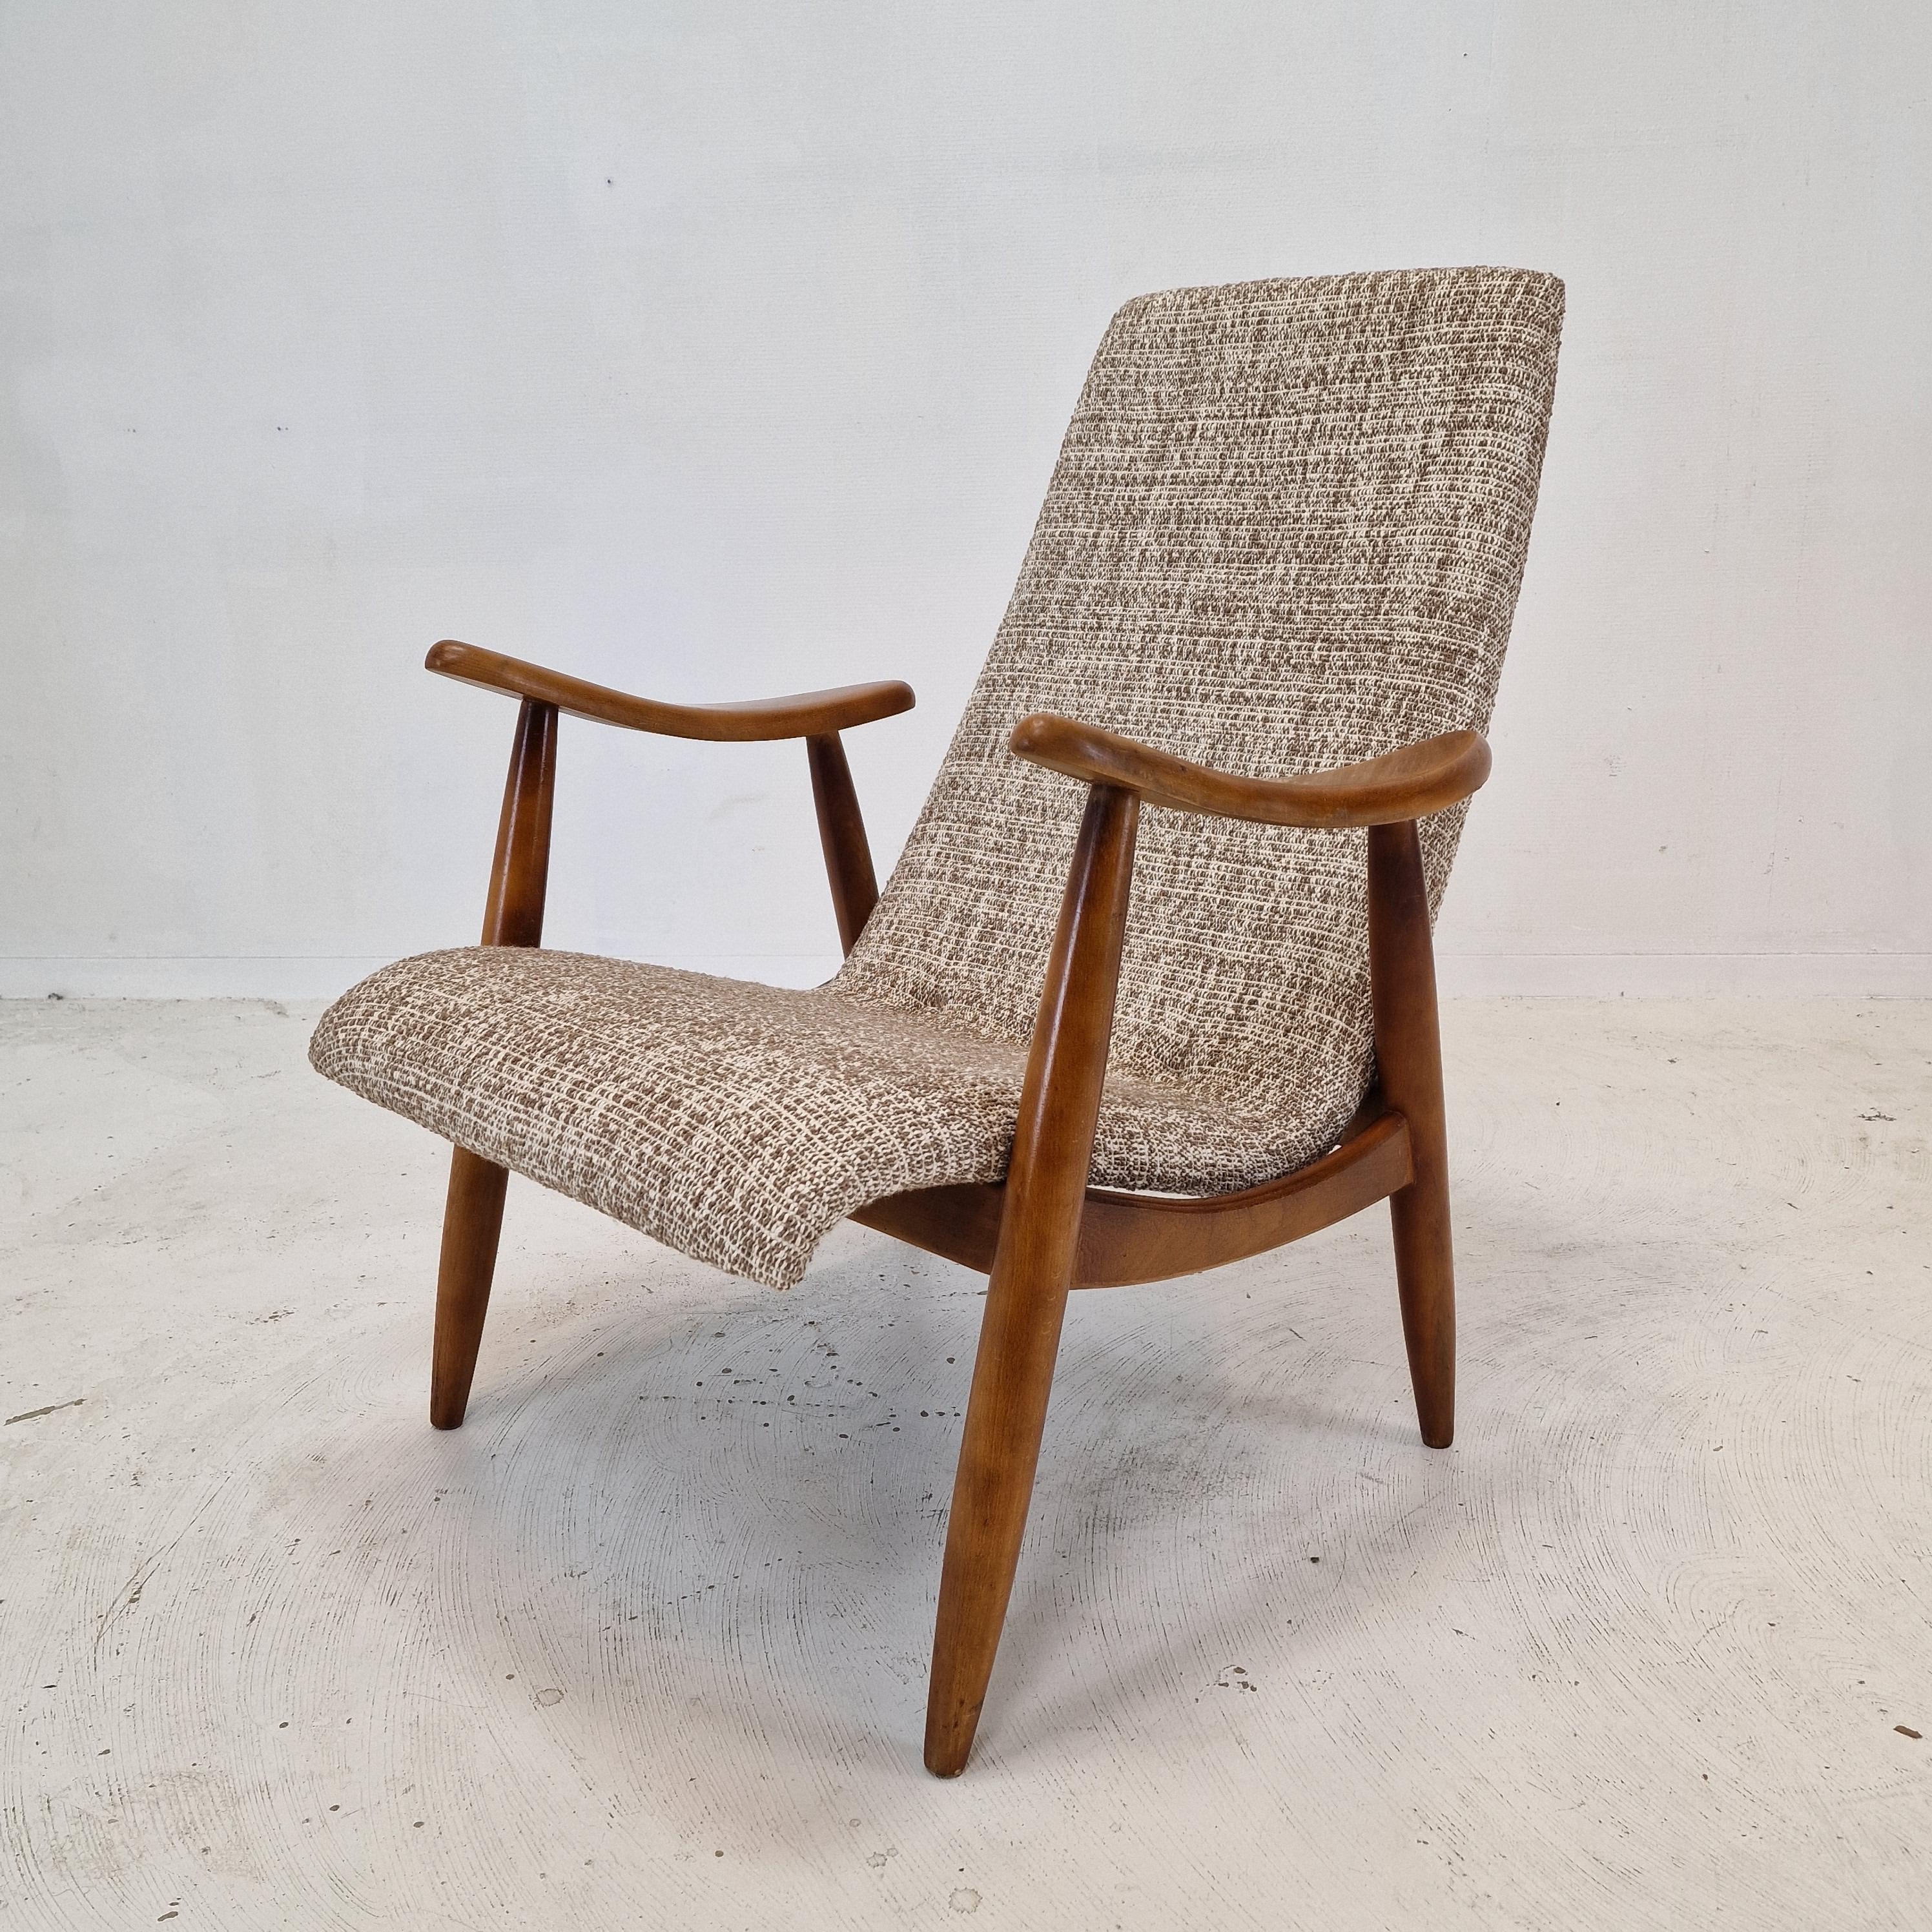 Schöner Loungesessel, entworfen und hergestellt in den 1960er Jahren in Dänemark.

Die elegante Struktur dieses bequemen Stuhls ist aus massivem Teakholz gefertigt.

Der Stuhl wurde gerade mit neuem Schaumstoff und neuem Stoff restauriert.
Er ist